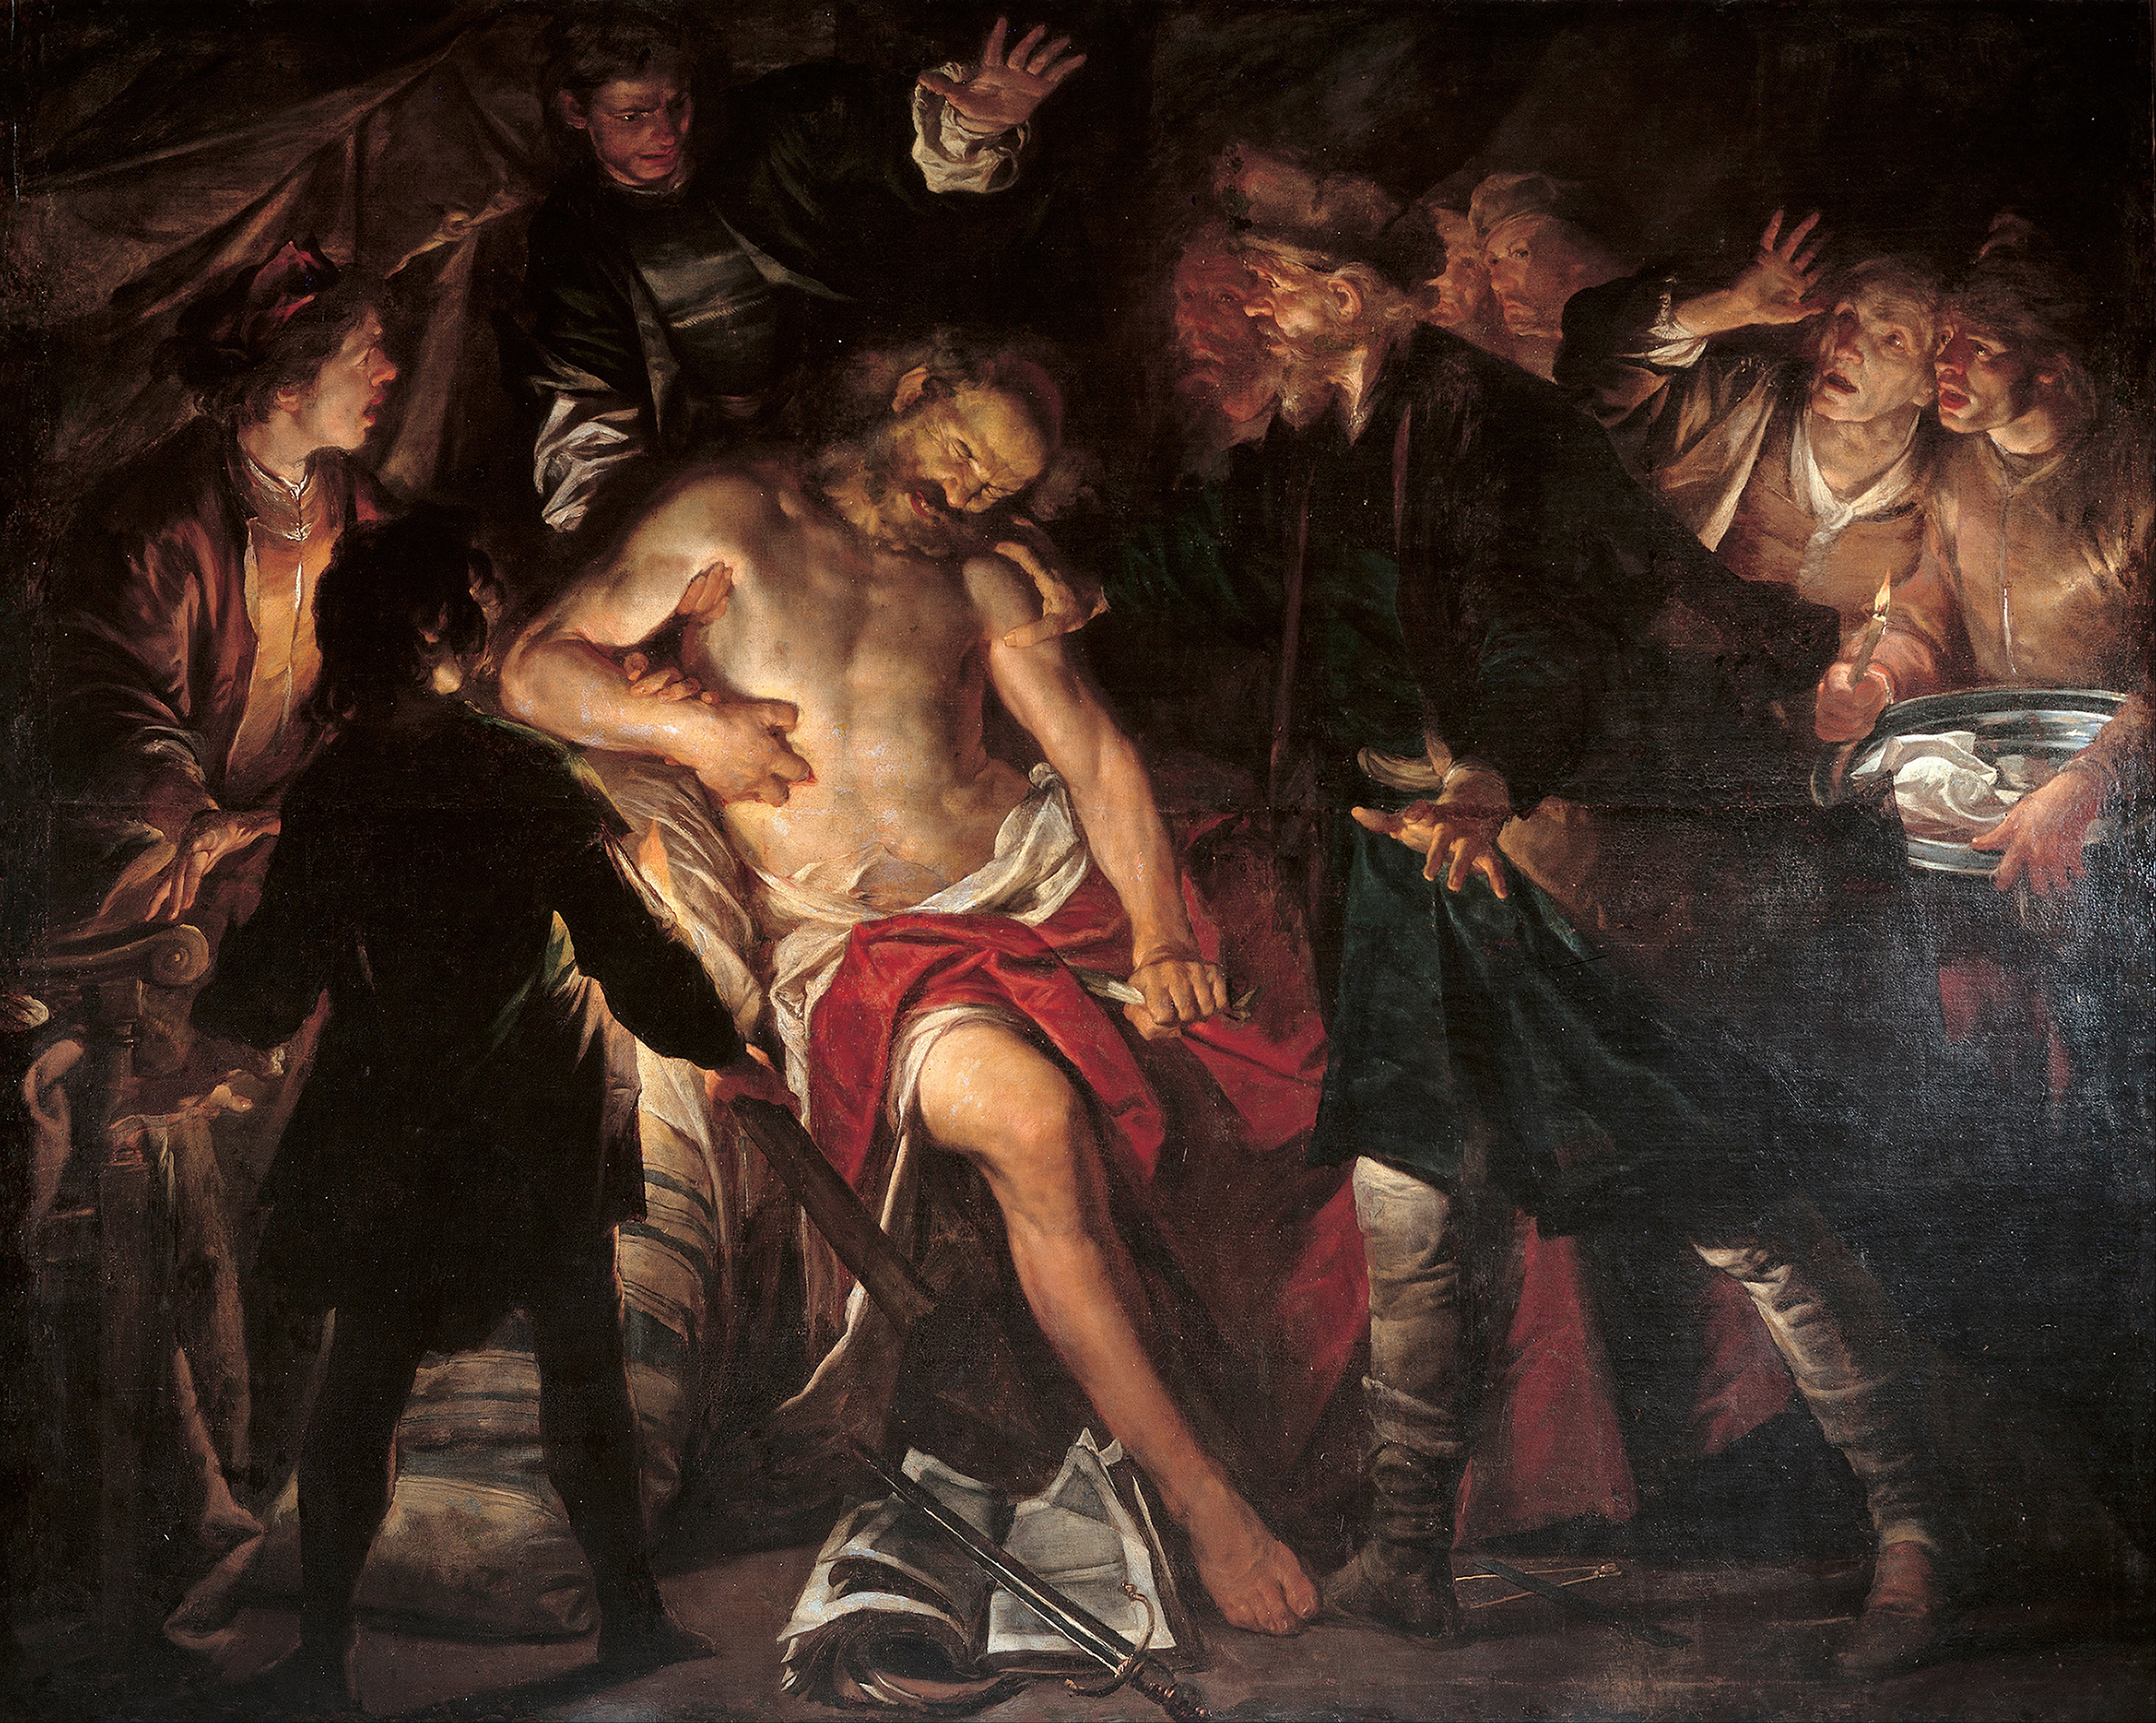 Vở kịch “Cato” thuật lại câu chuyện bi kịch của nhân vật Cato, một người ủng hộ nền cộng hòa kiêm chính trị gia La Mã, đã chết vì chống lại quân đội của Julius Caesar tại Utica ở Bắc Phi. Tác phẩm “Death of Cato” (Cái chết của Cato) của họa sĩ Gioacchino Assereto, khoảng năm 1640. Bảo tàng Strada Nuova, Genoa, nước Ý. (Ảnh: Tài sản công)